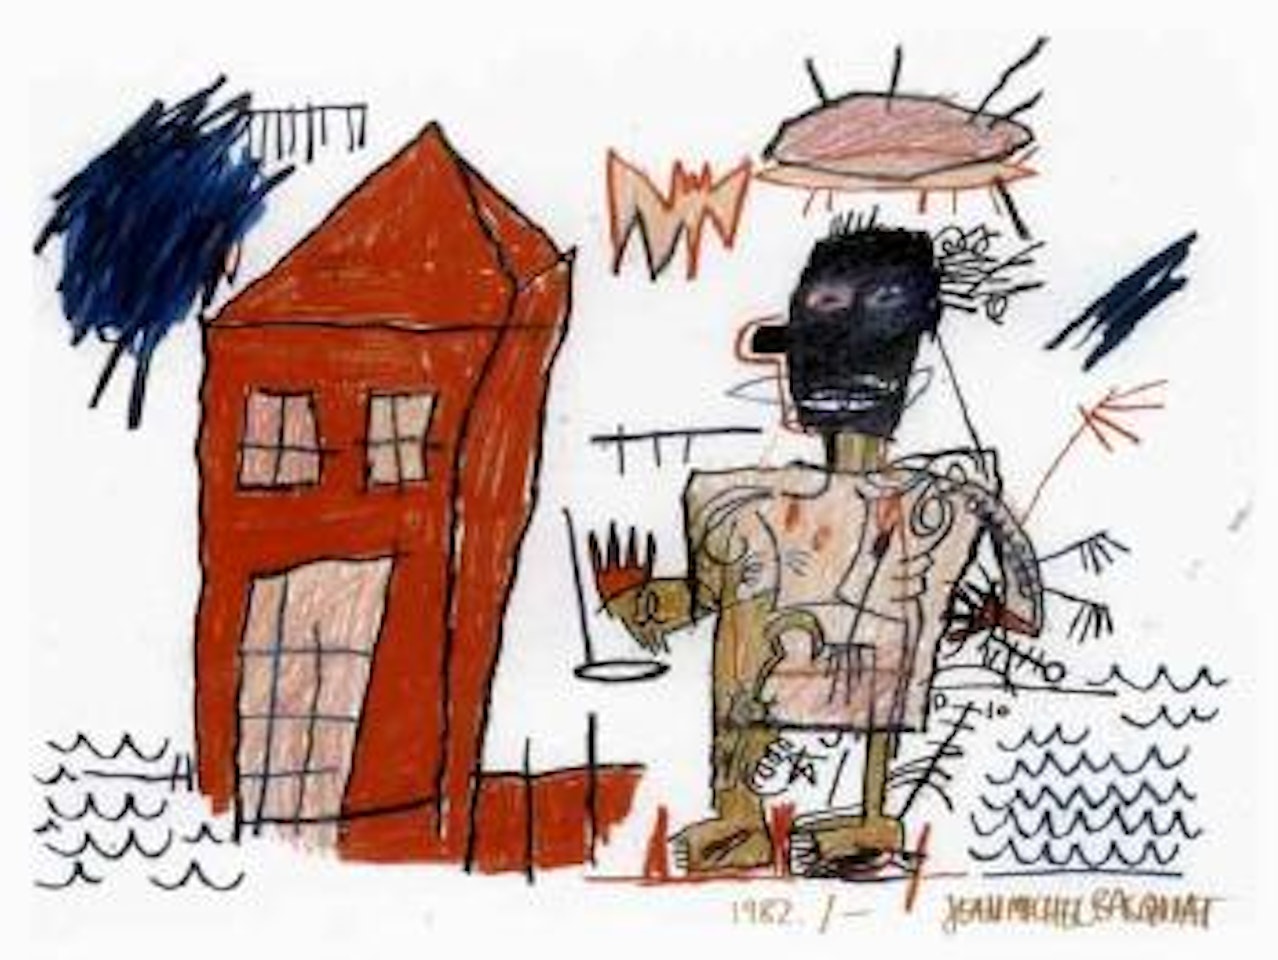 Earlm by Jean-Michel Basquiat